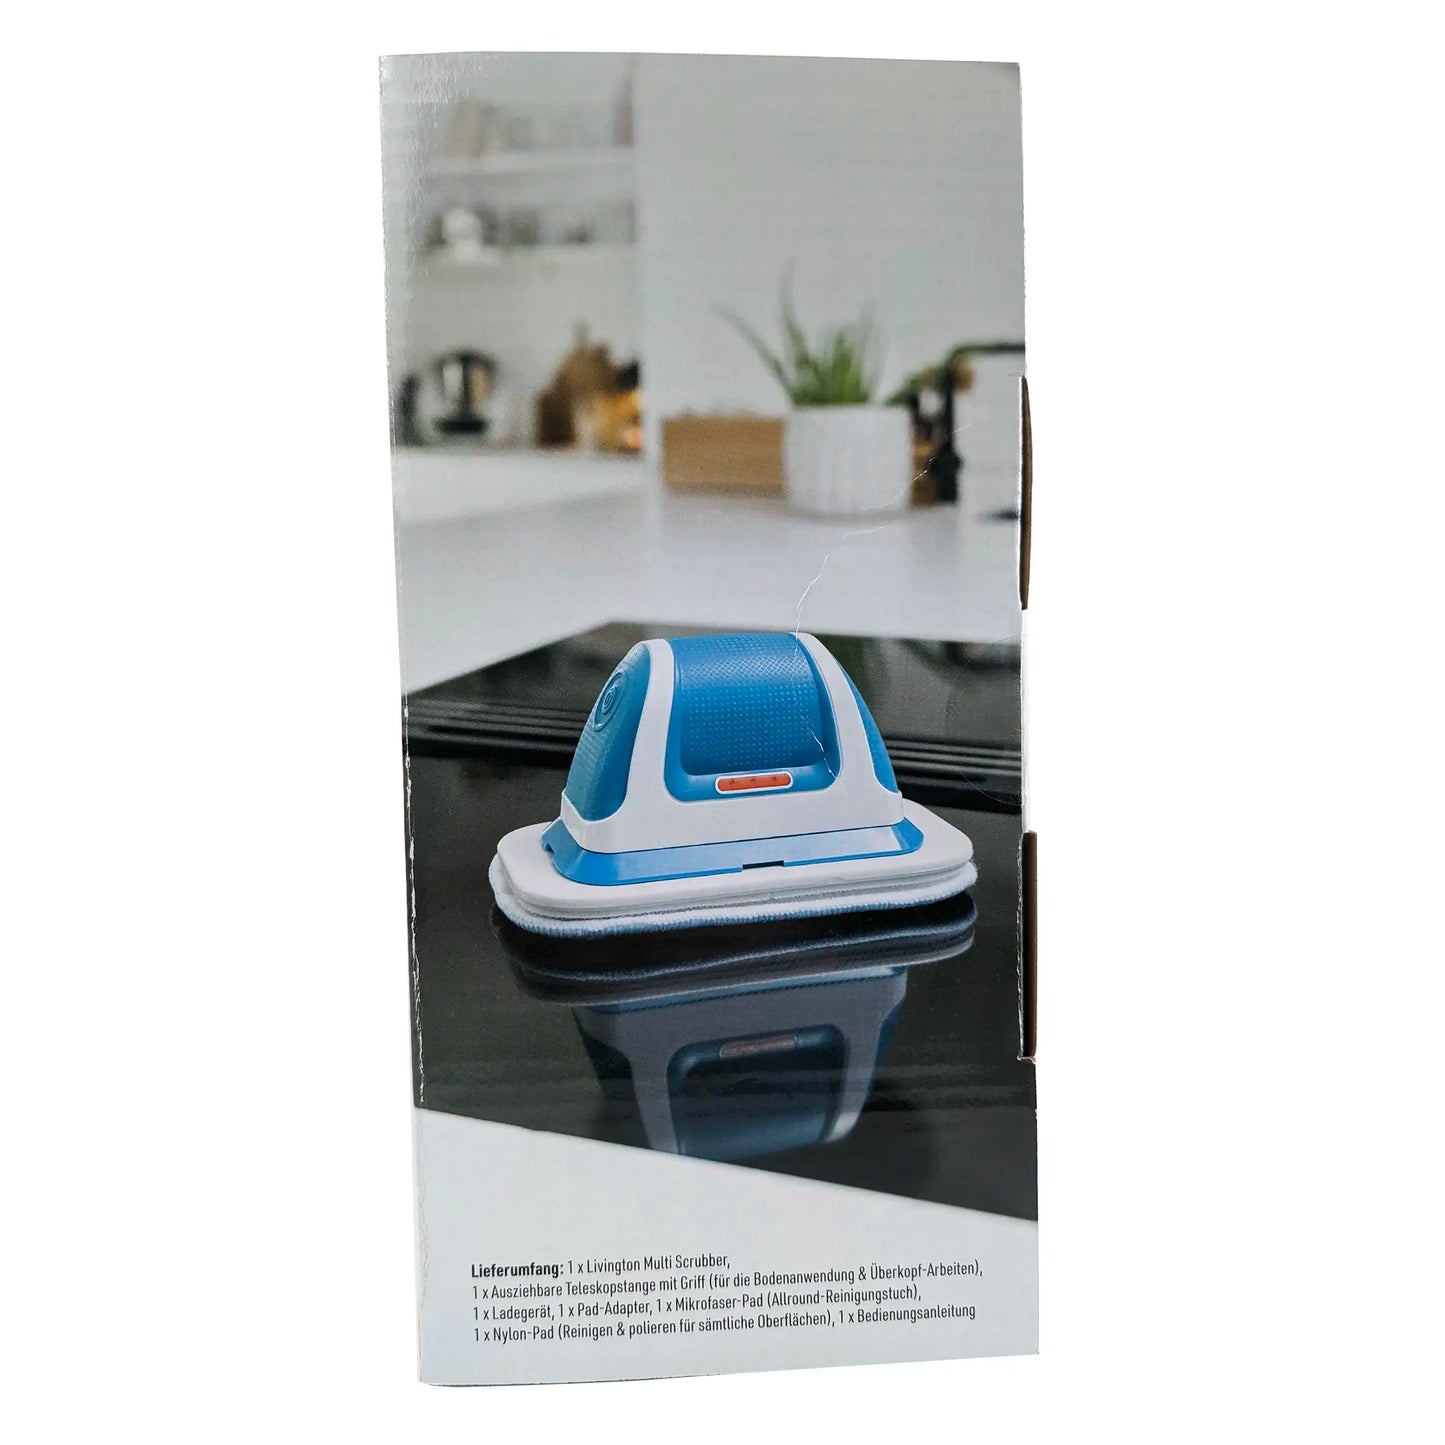 Livington MultiScrubber - Der geniale Akkuschrubber mit Vibrations-Power - putzt - schrubbt und poliert mit 1500 Vibrationen pro Minute